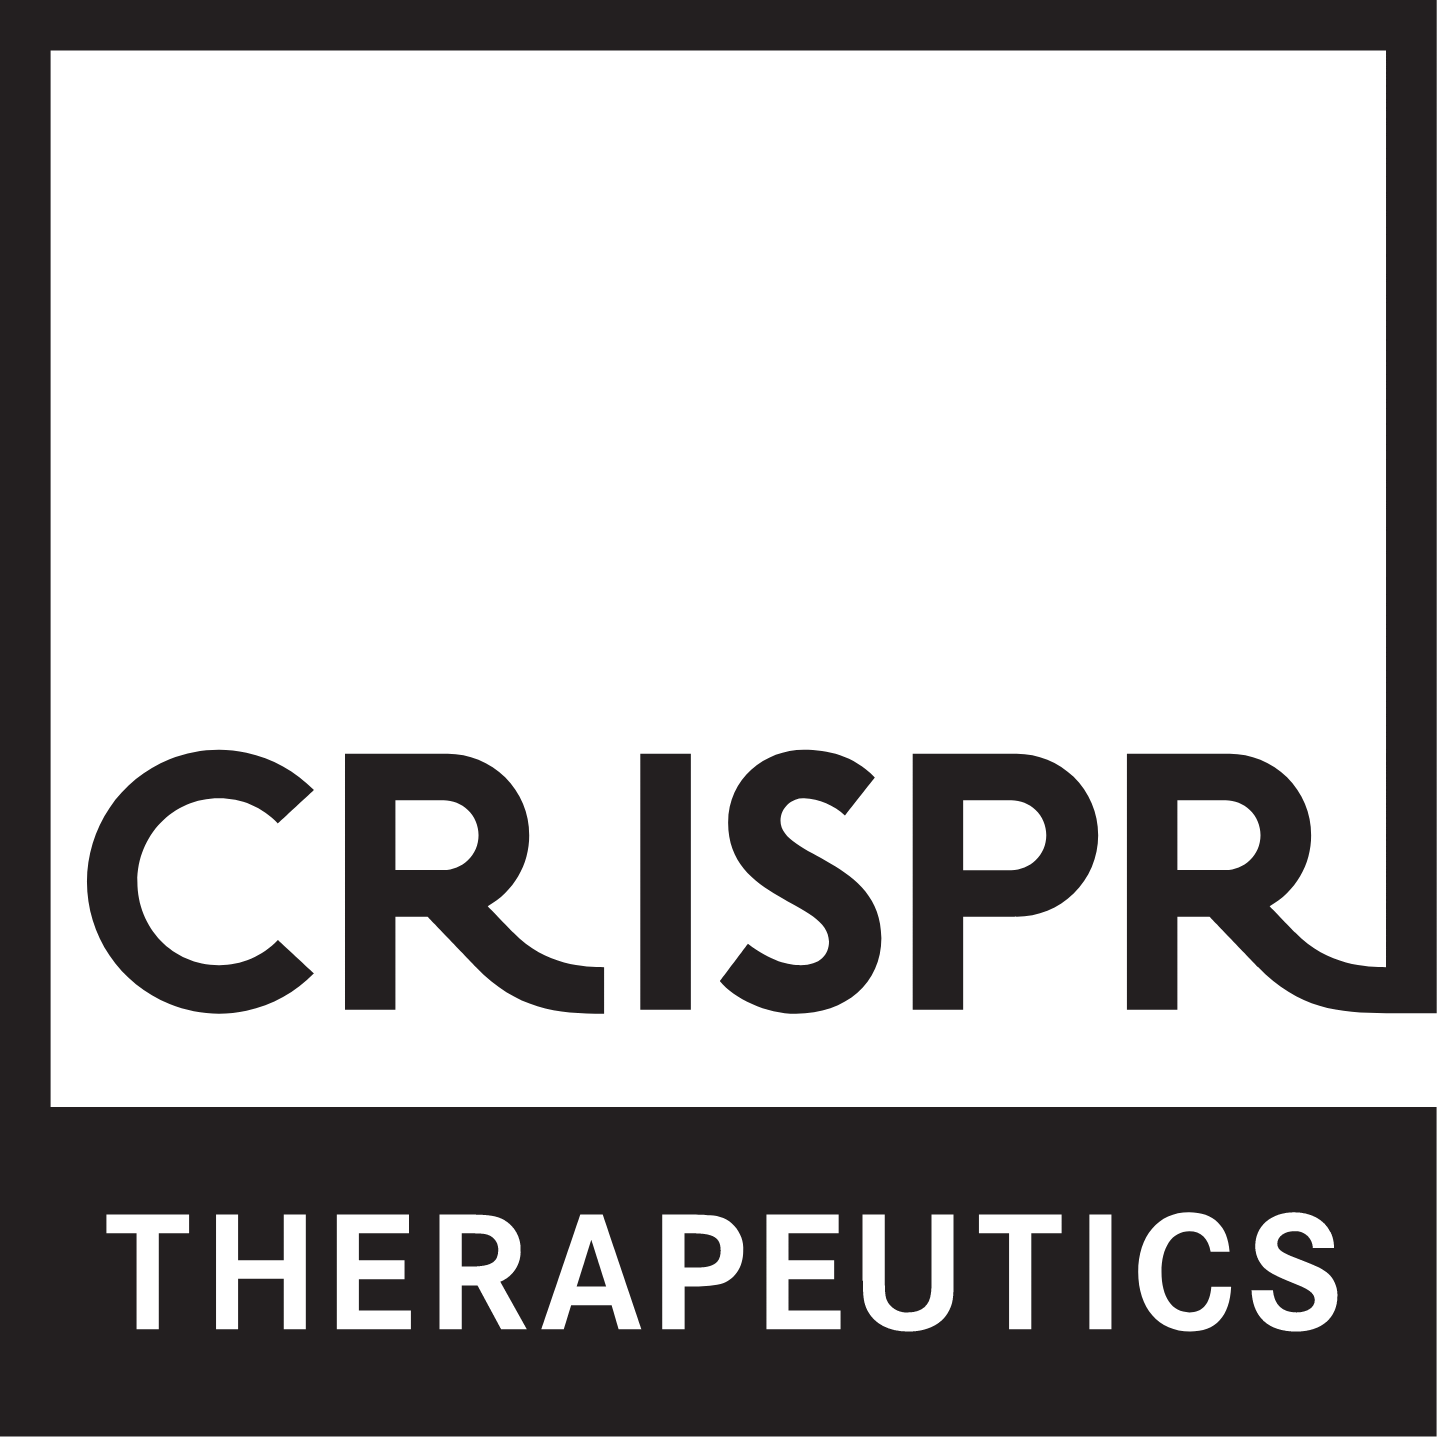 CRISPR Therapeutics Logo (transparentes PNG)